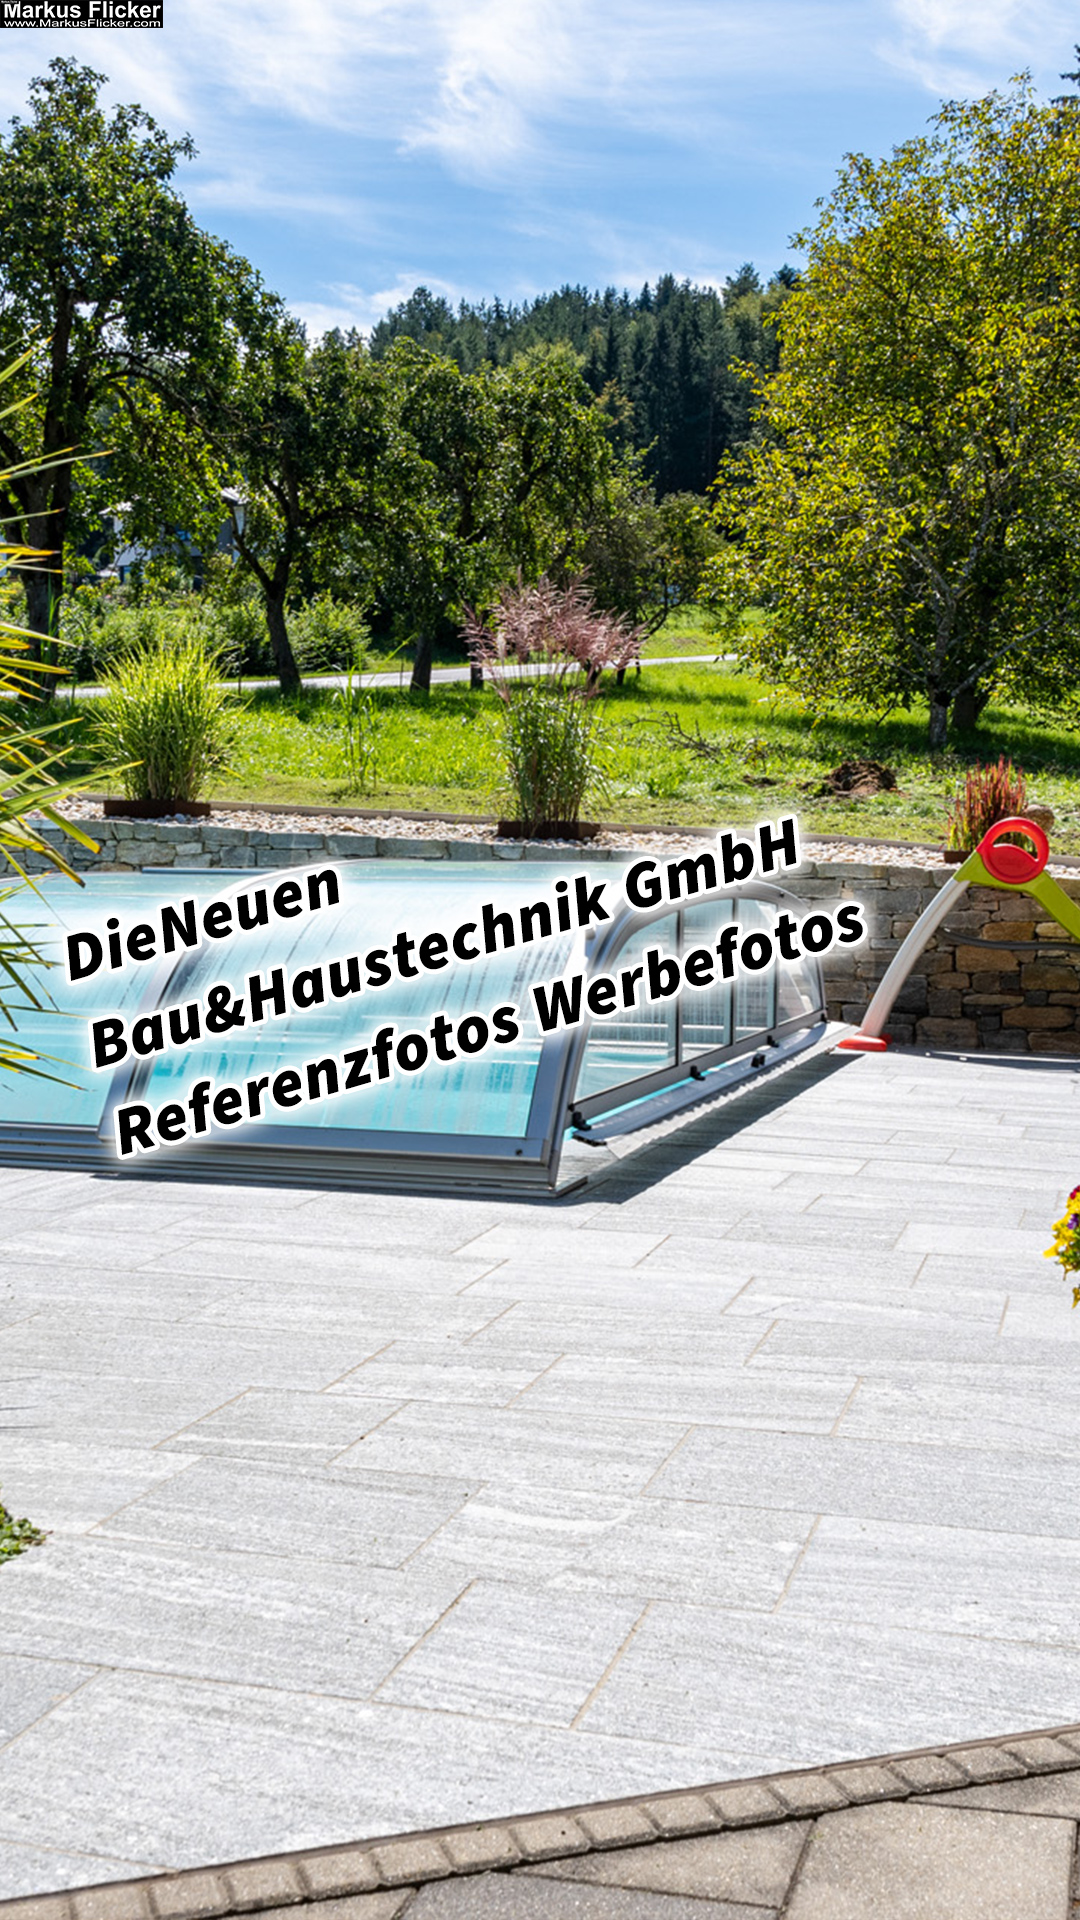 DieNeuen Bau&Haustechnik GmbH Referenzfotos Werbefotos